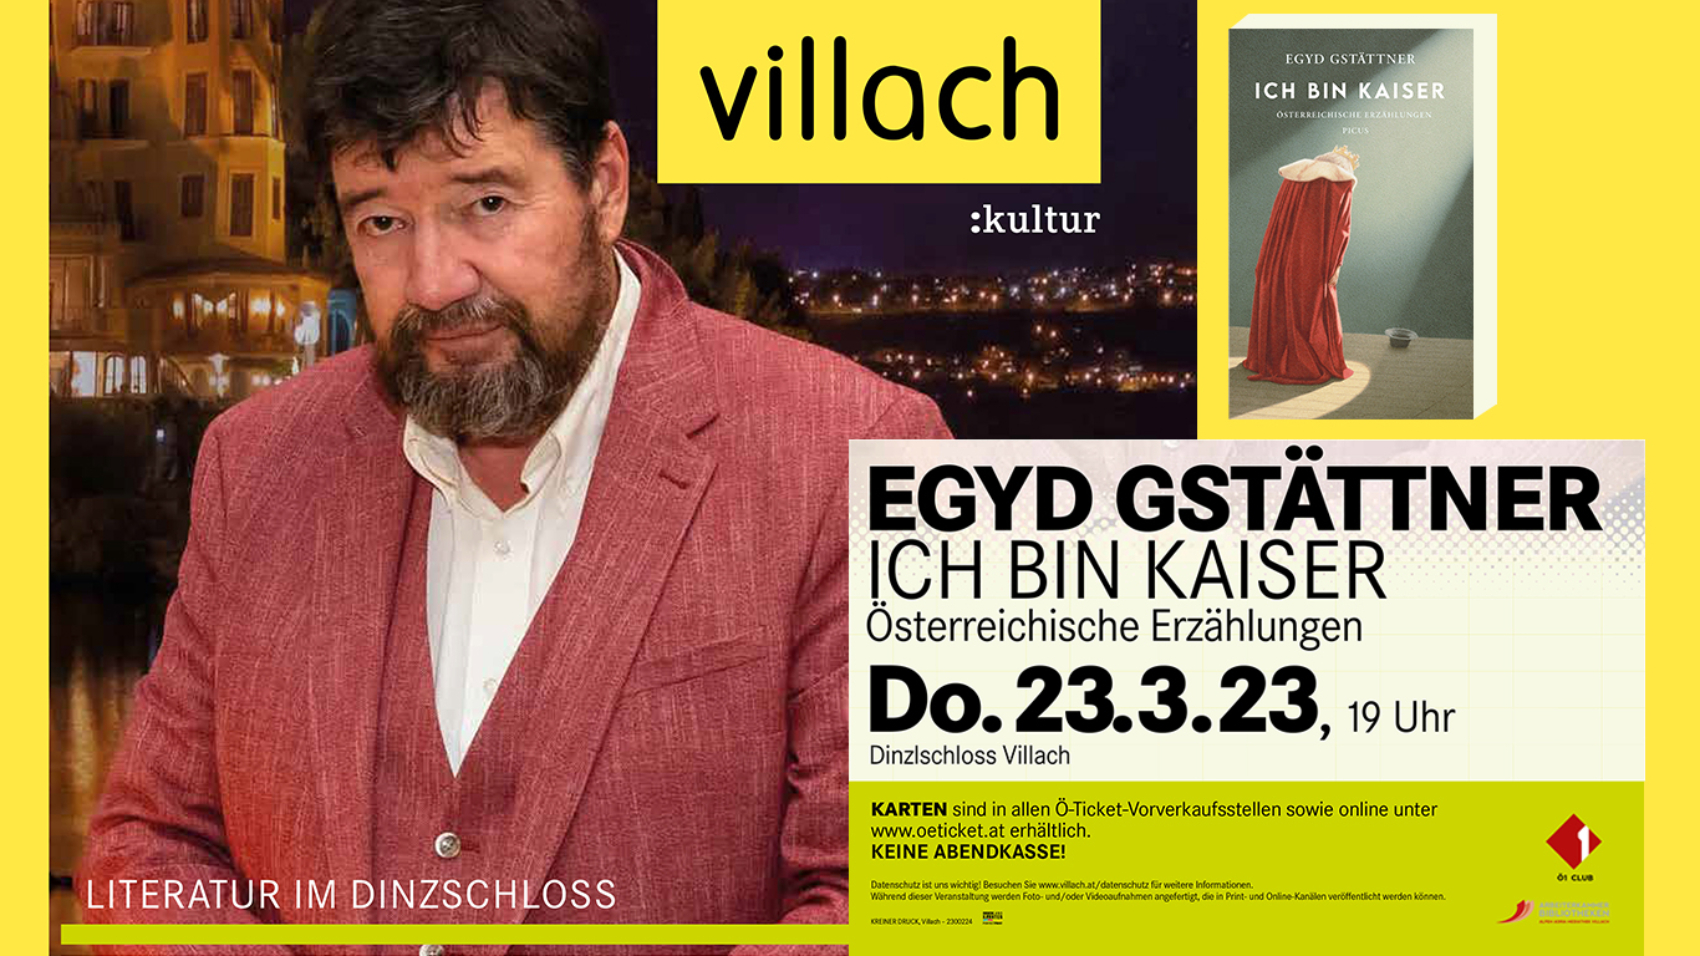 Egyd Gstättner liest aus seinem neuen Buch "Ich bin Kaiser" am Donnerstag, dem 23. März 2023 im Dinzlschloss Villach. Karten gibt es in allen Ö-Ticket-Vorverkaufsstellen sowie online unter oeticket.at. Eintritt ab 19 Uhr.